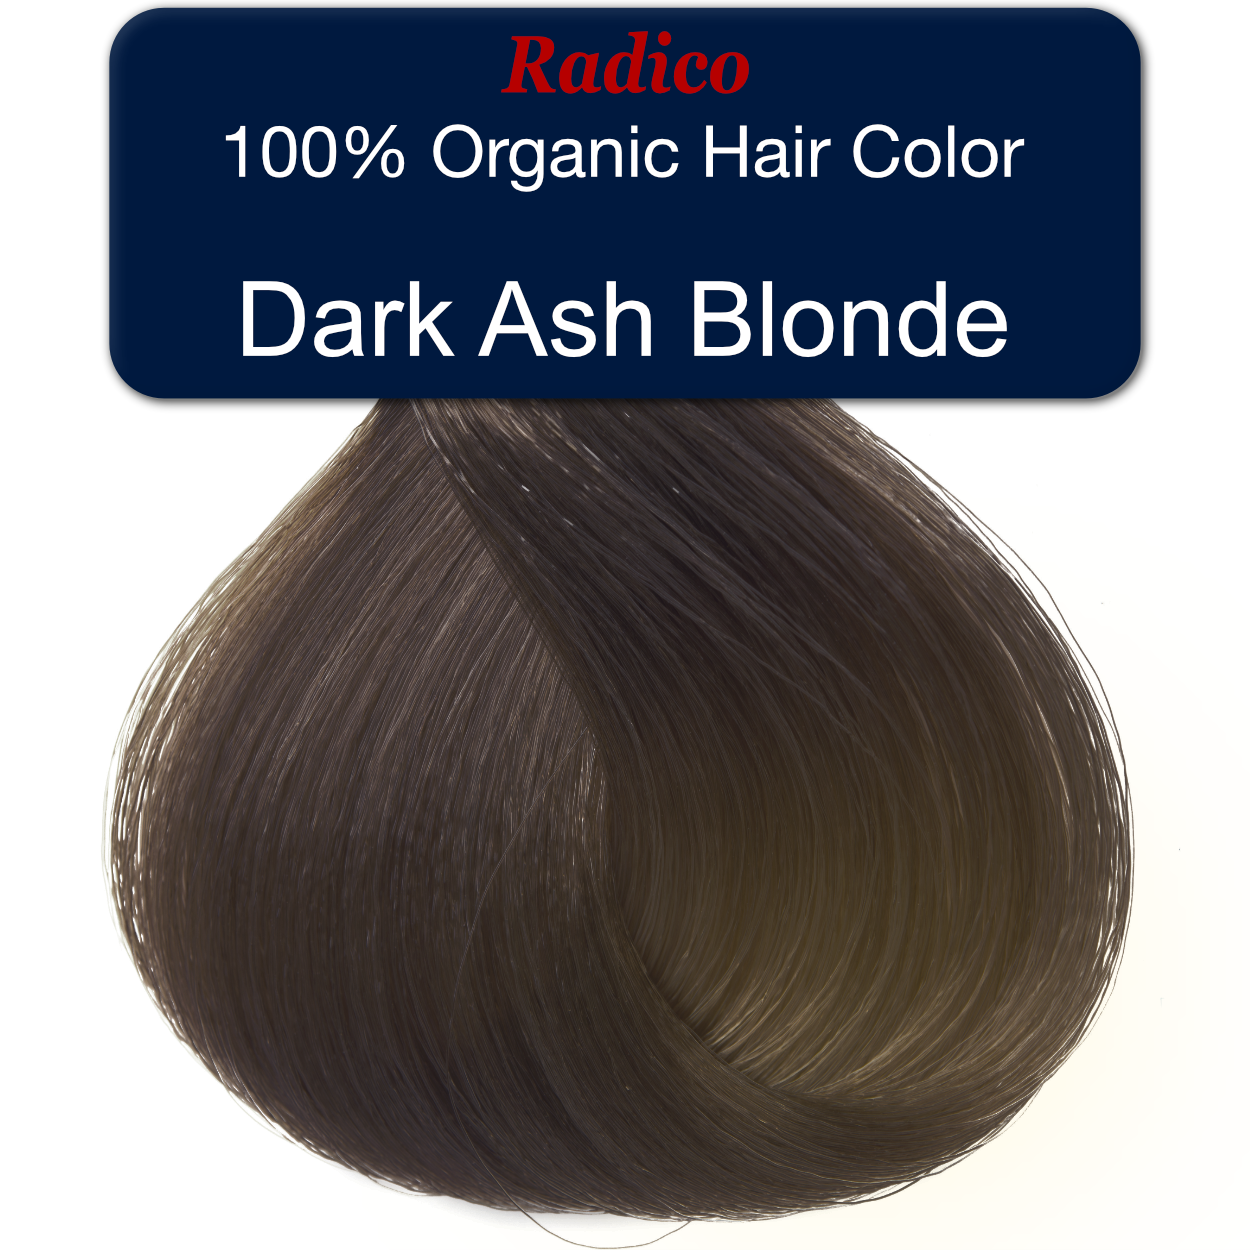 100% Organic hair color. Dark ash blonde hair color sample.